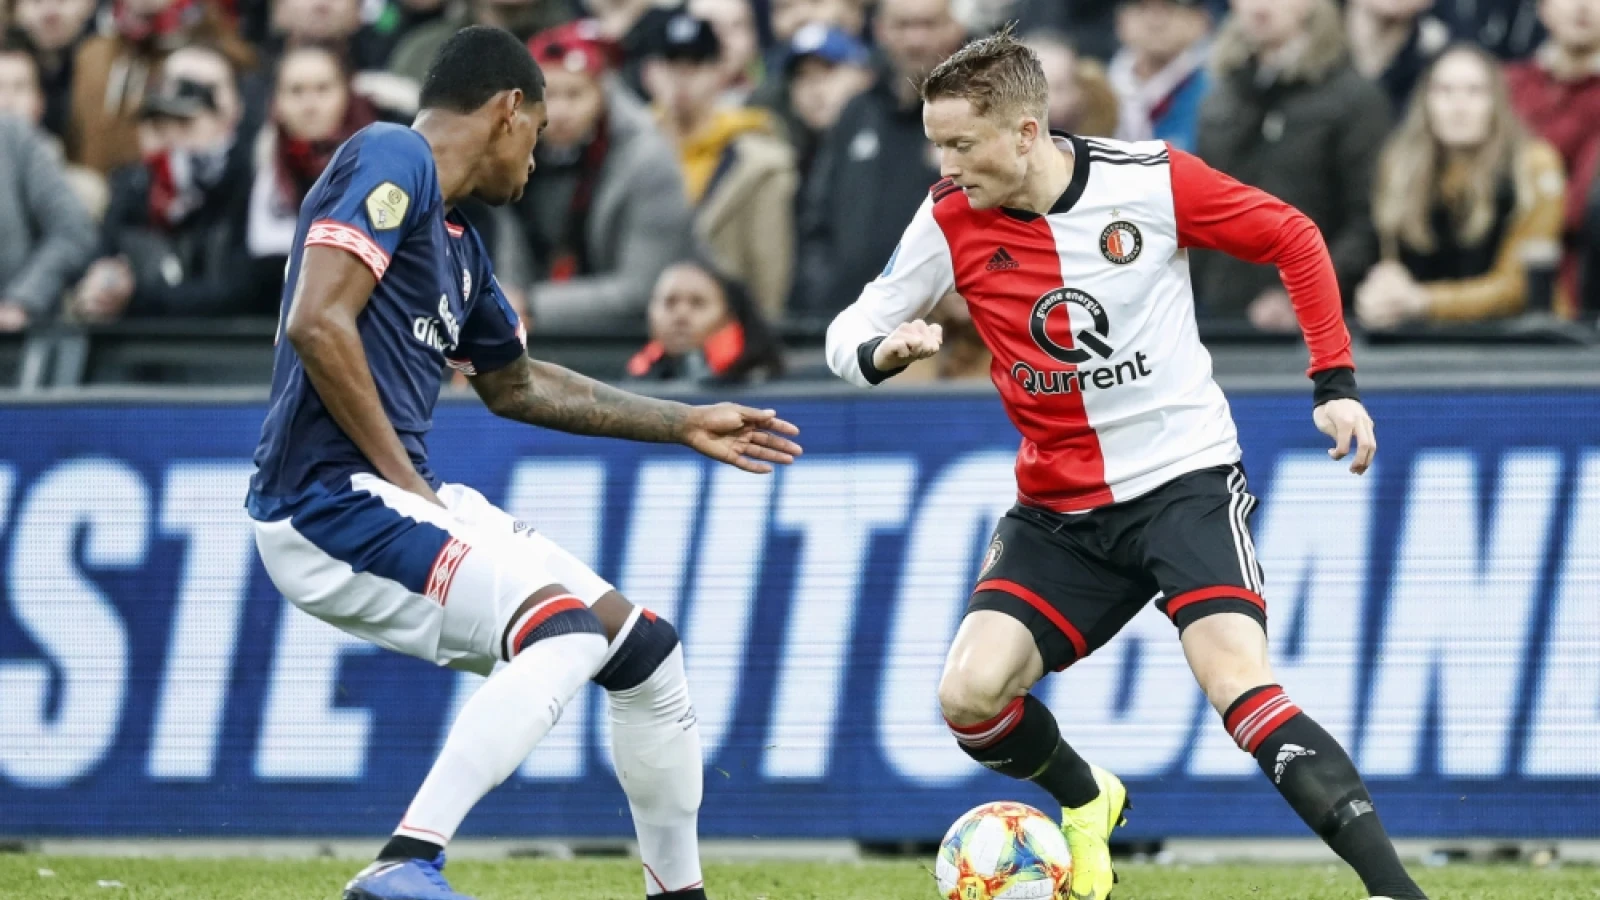 LIVE | Feyenoord - PSV 2-1 | Einde wedstrijd